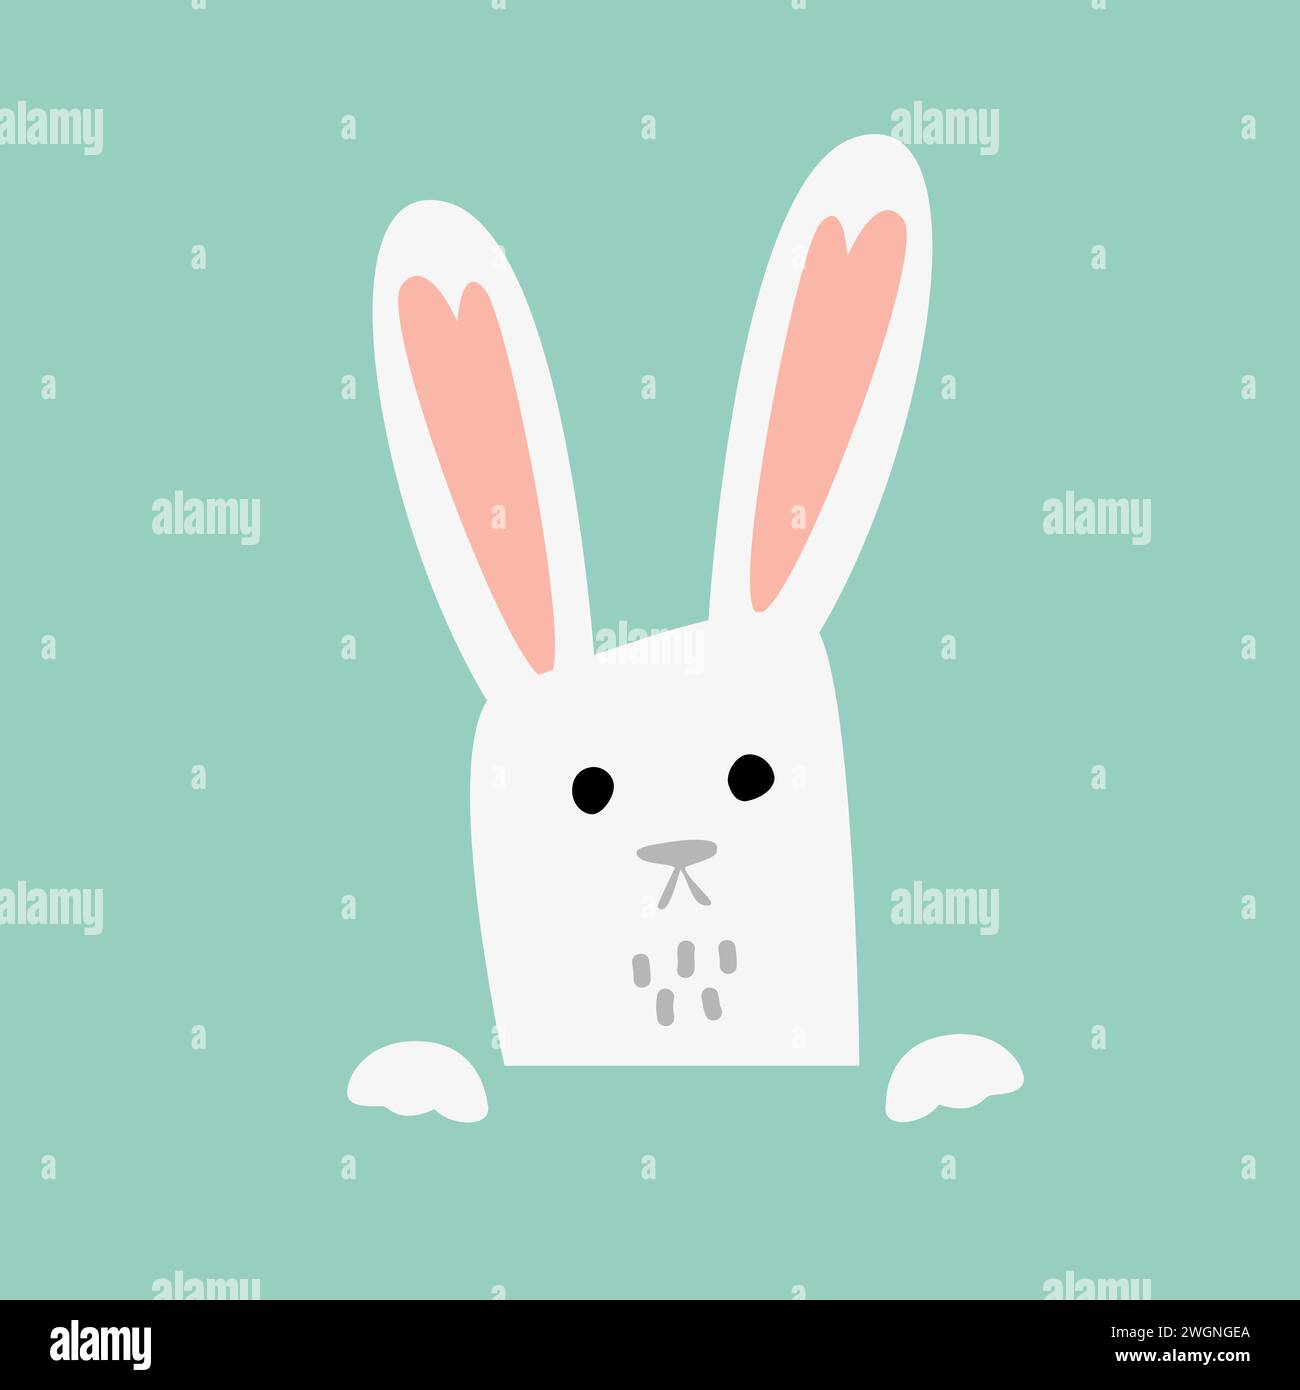 Graziosa illustrazione vettoriale del coniglietto pasquale, faccia disegnata a mano del coniglietto. Simpatico coniglio bambino che guarda con le zampe. Vettore isolato. Illustrazione Vettoriale